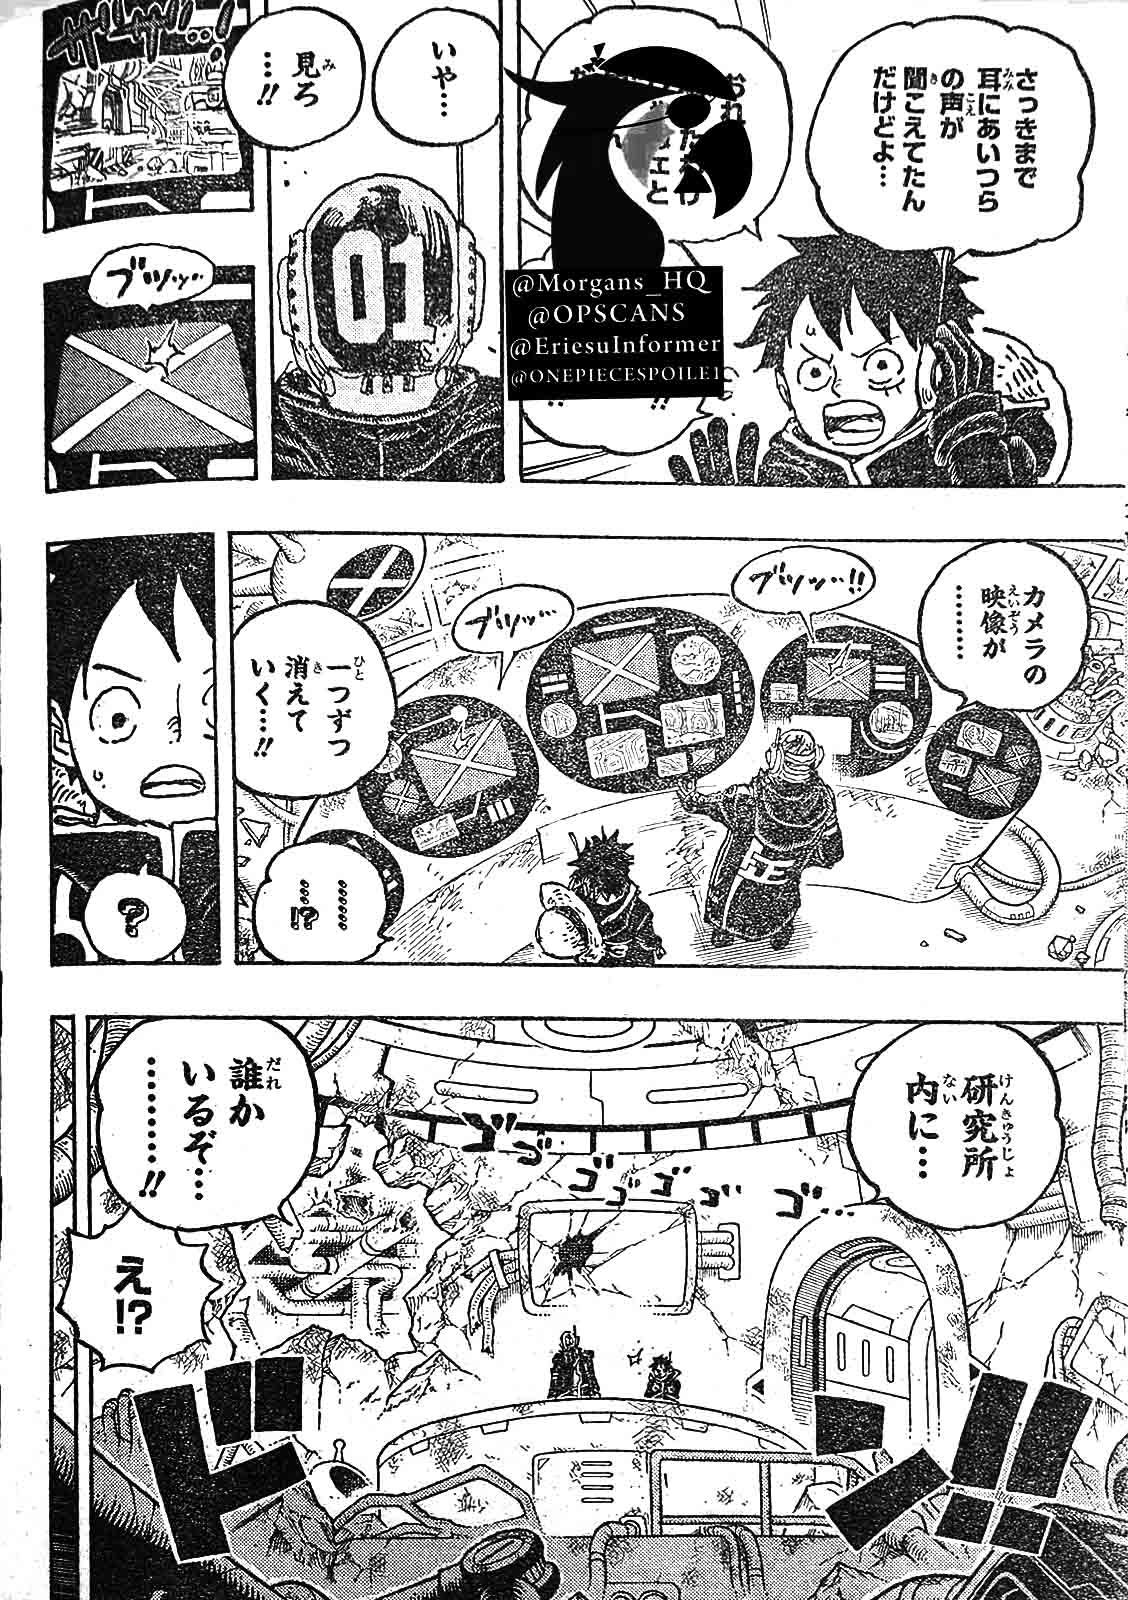 Baca manga komik One Piece Berwarna Bahasa Indonesia HD Chapter 1075r